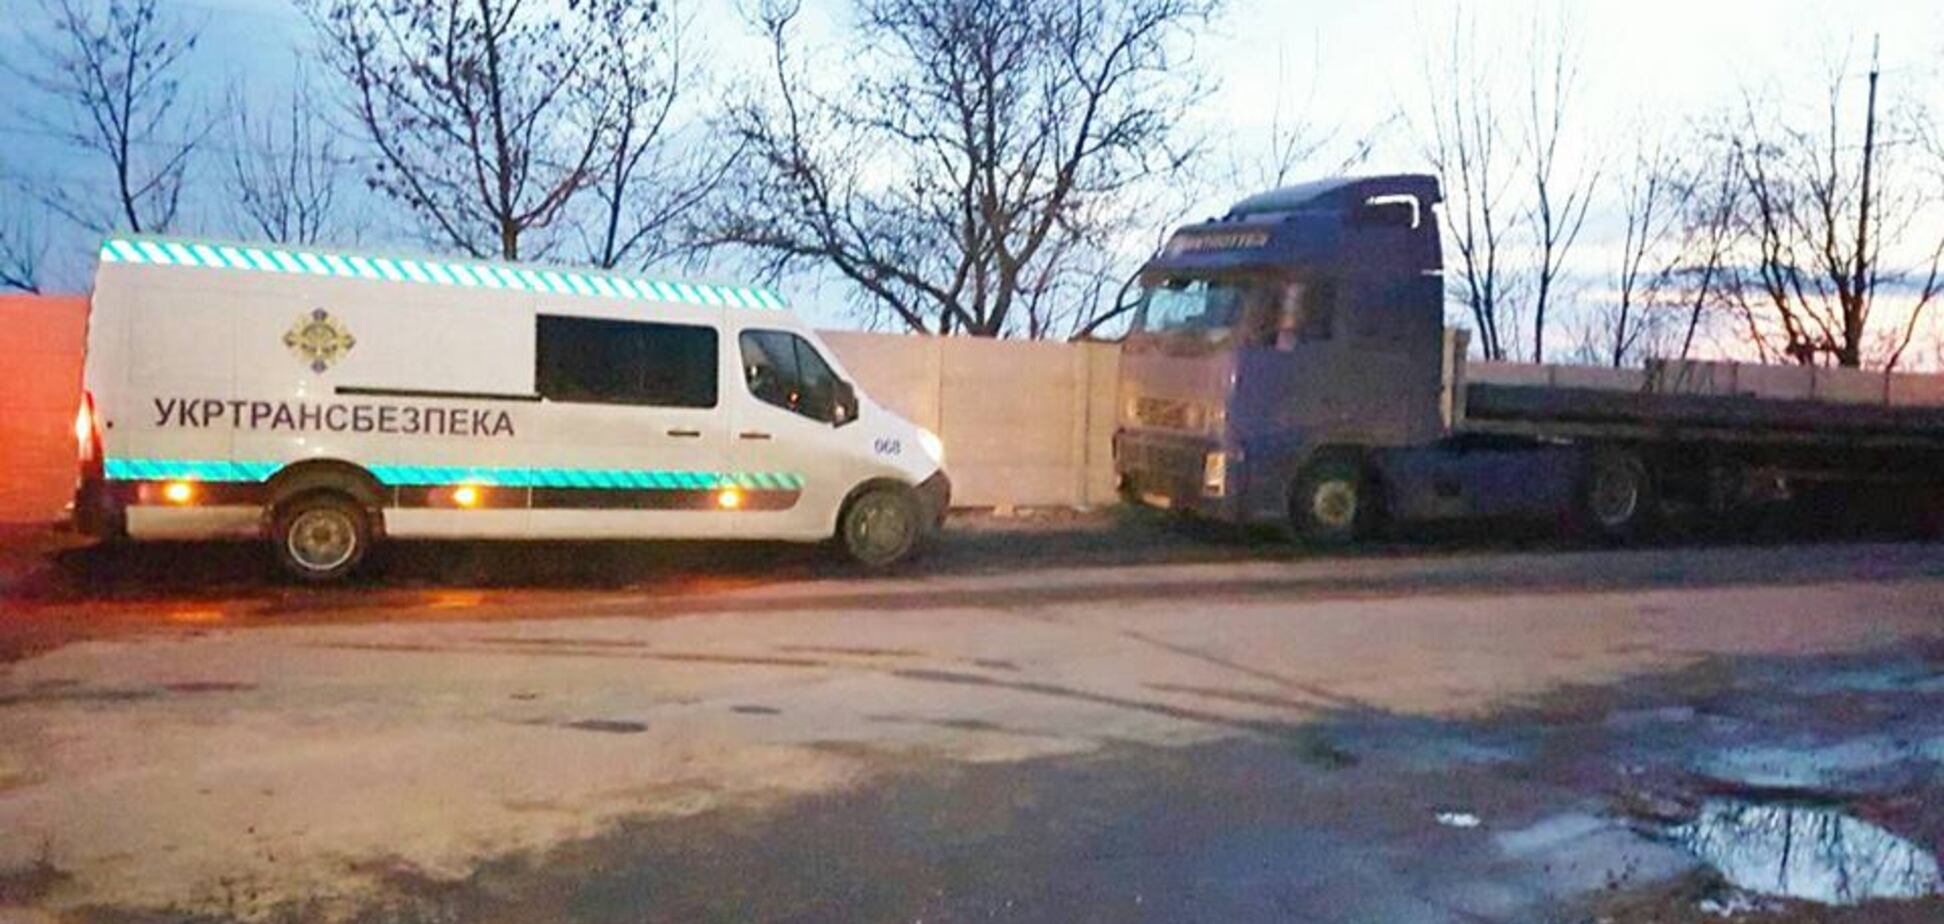 'Укртрансбезпека' залучить українців до контролю над дорогами